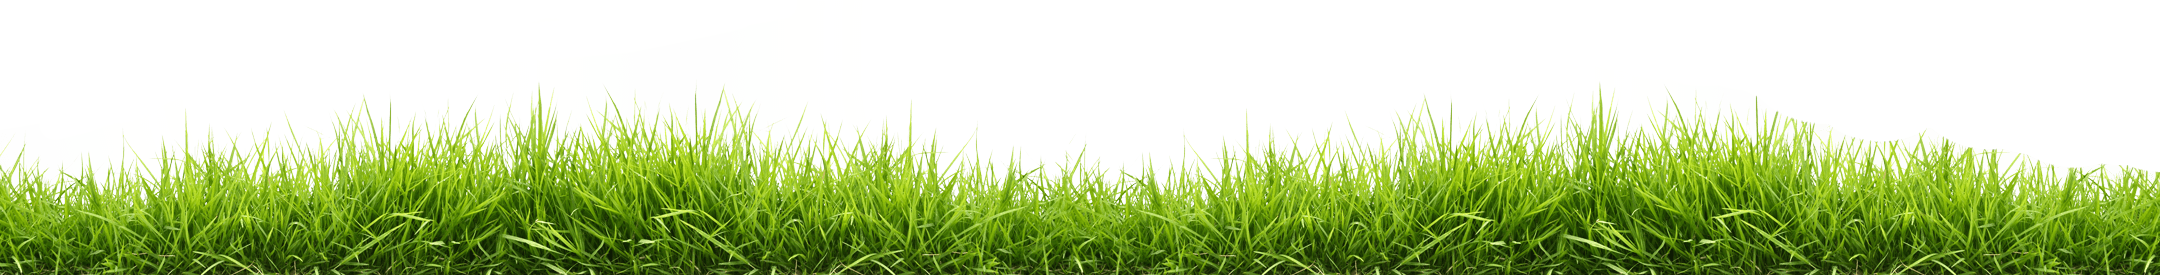 Transparenter Hintergrund des grünen Gras